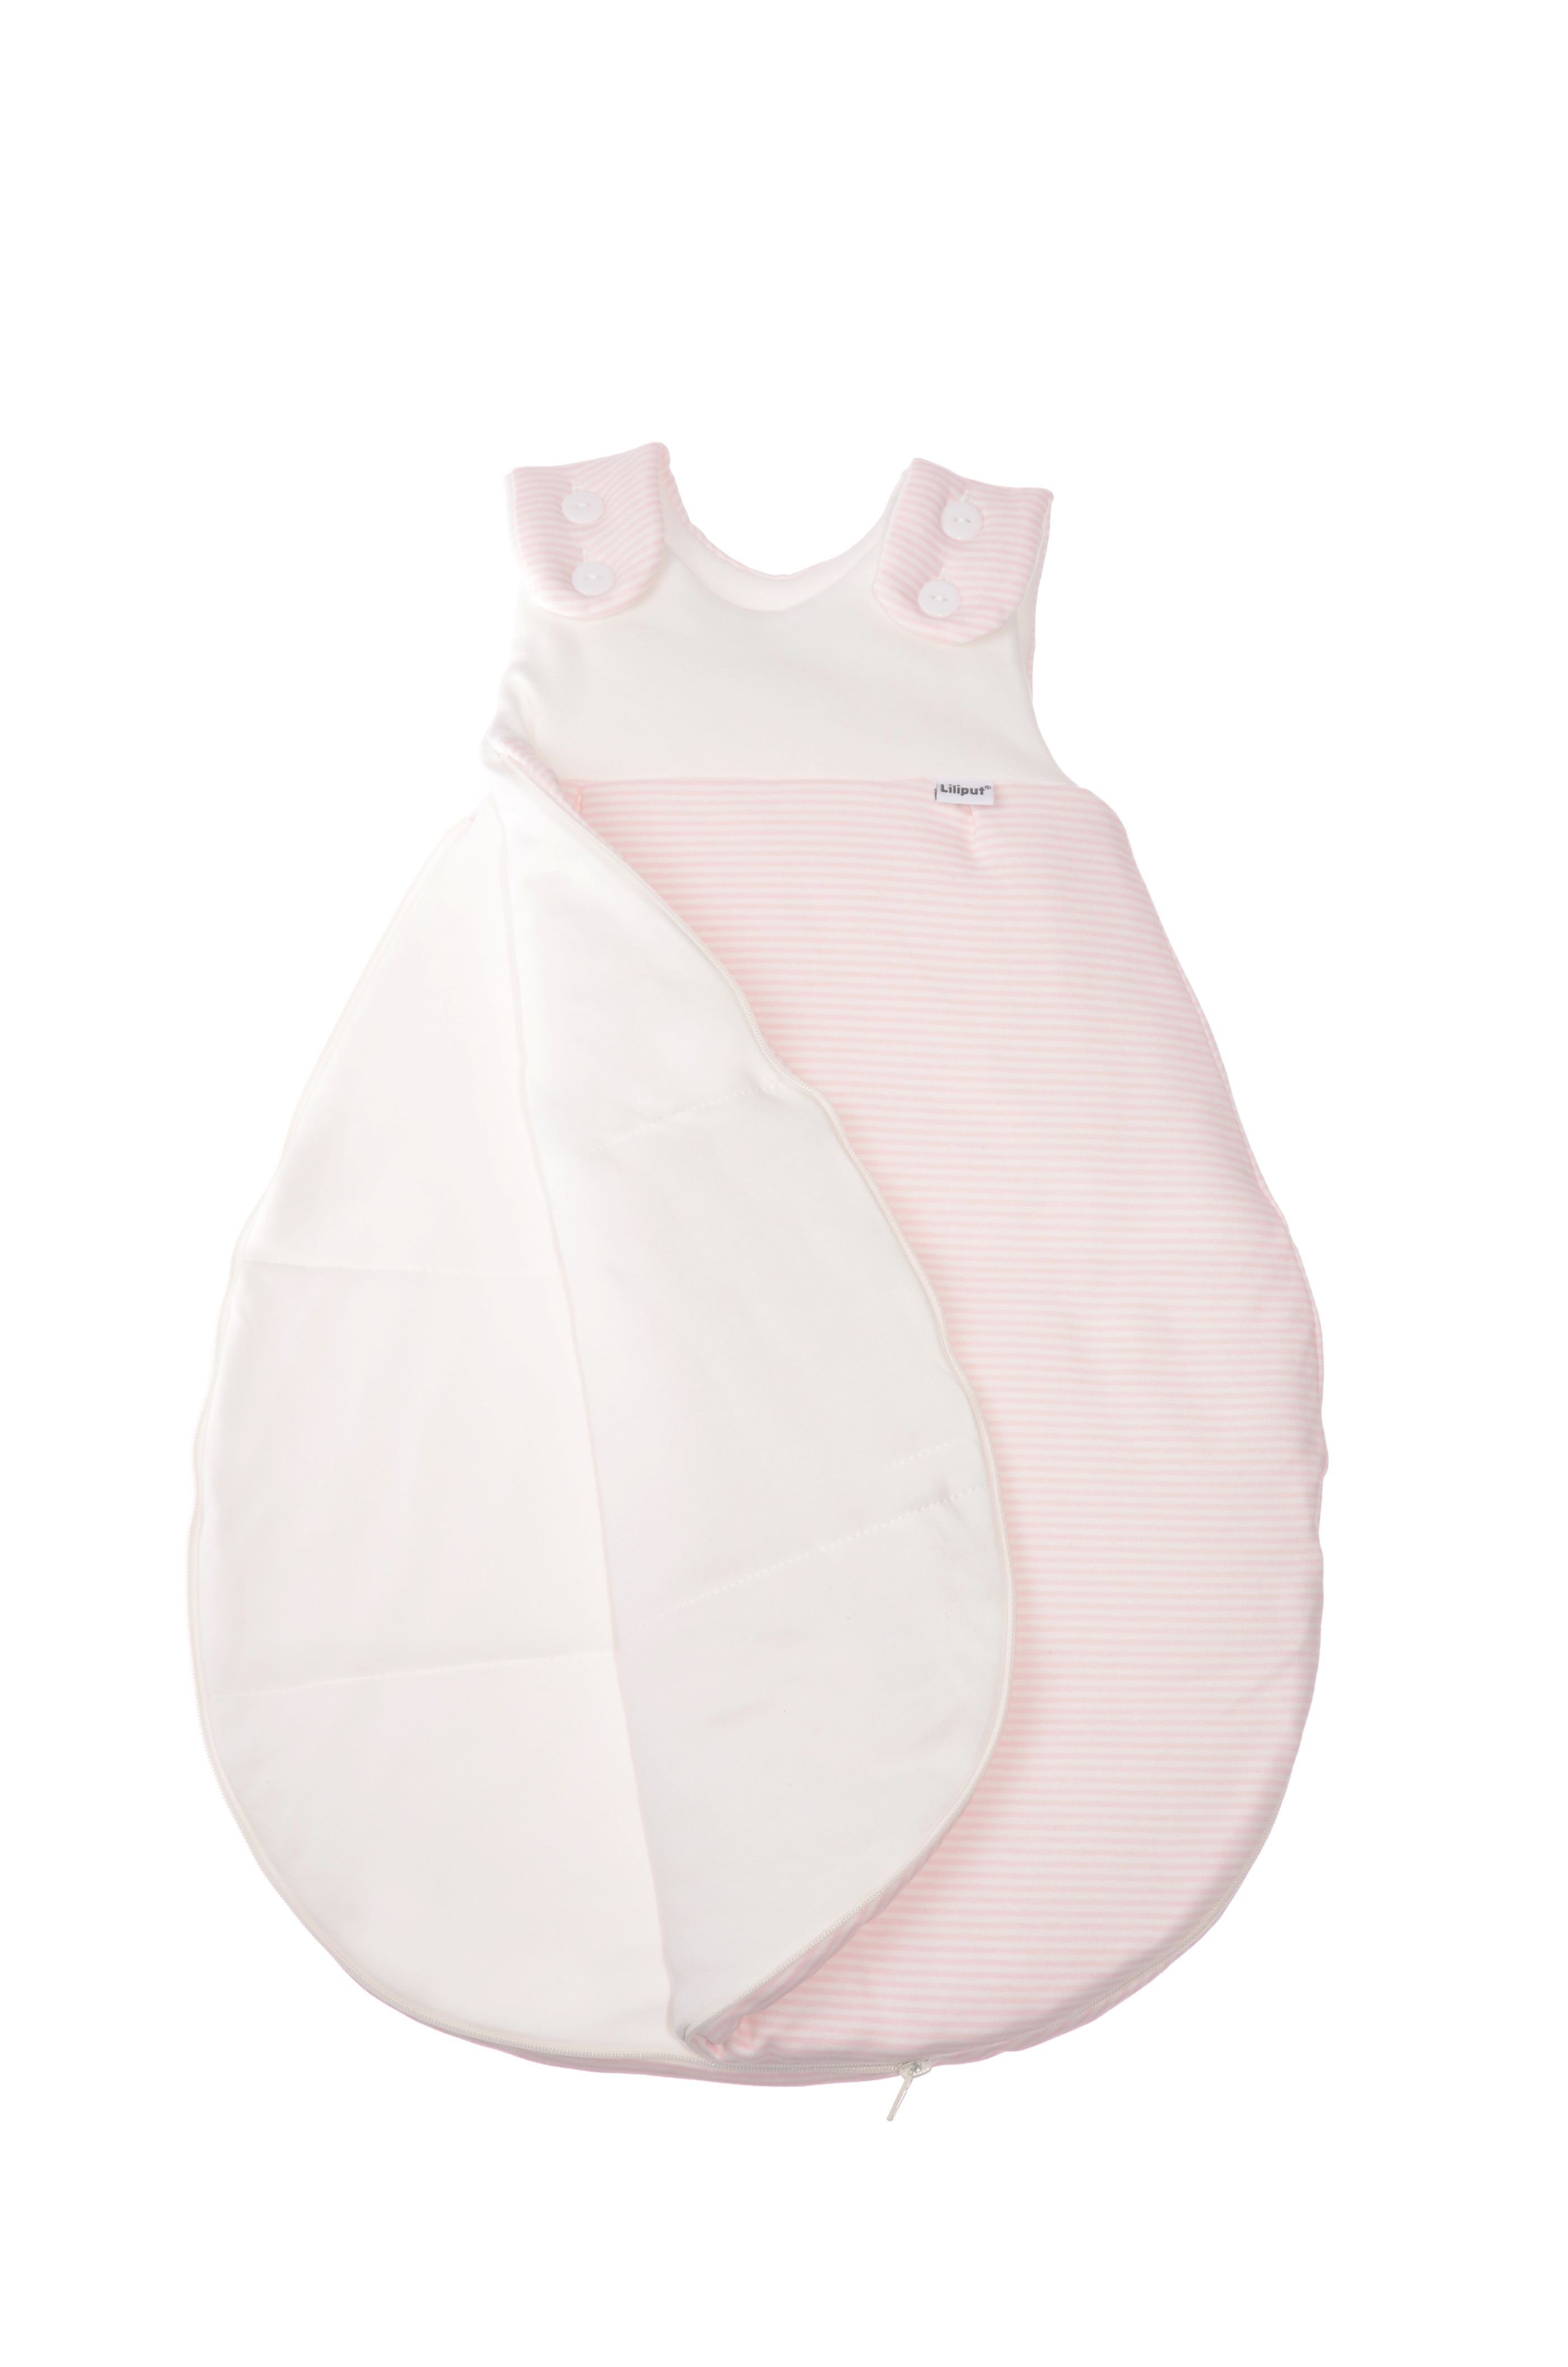 Babyschlafsack, Liliput Streifendesign im verspielten